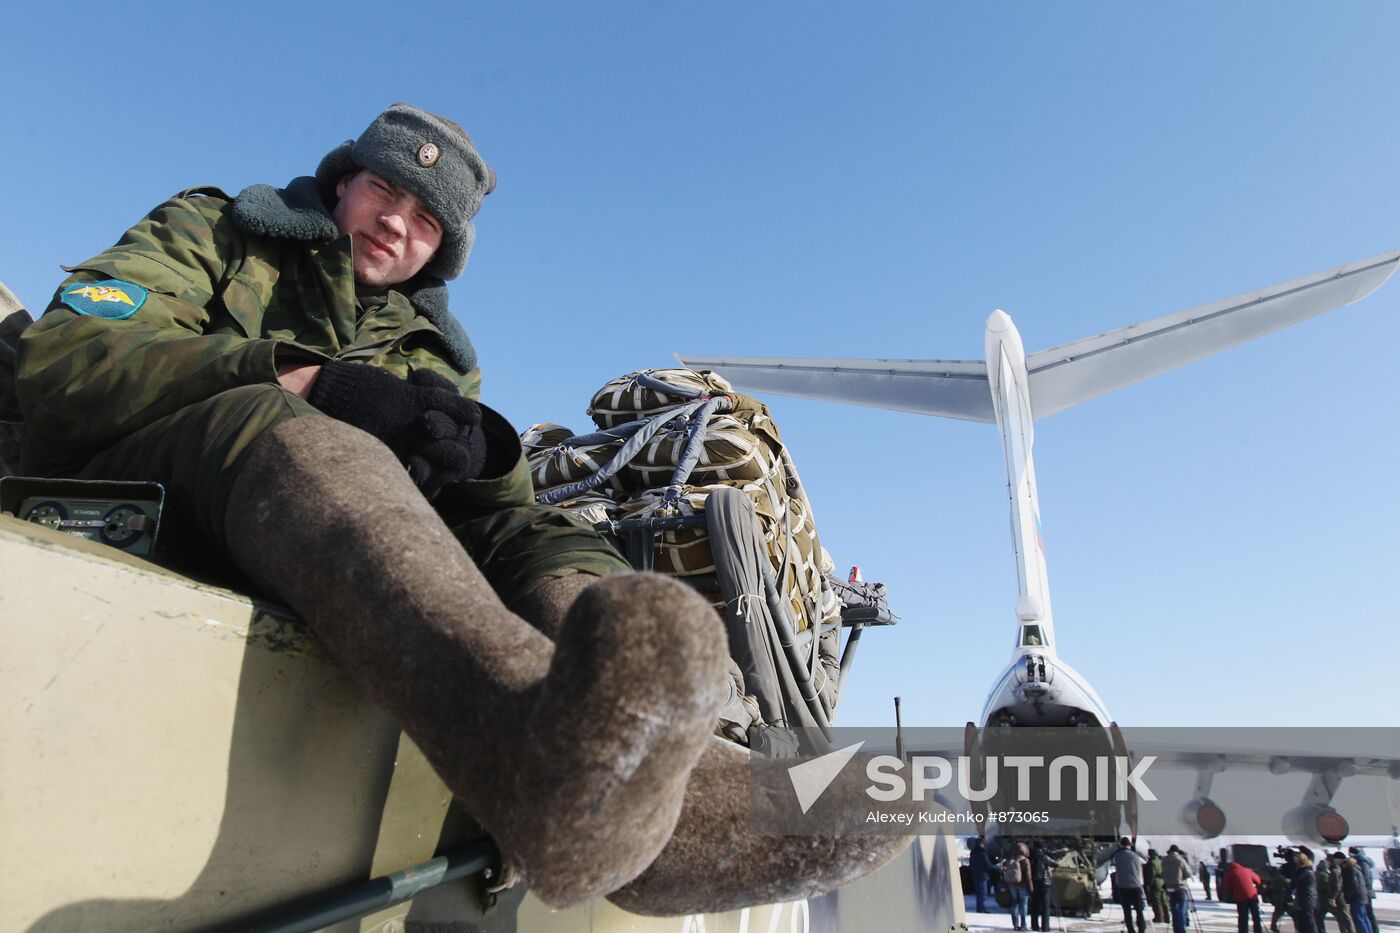 Airborne troops stage drills in Ryazan Region